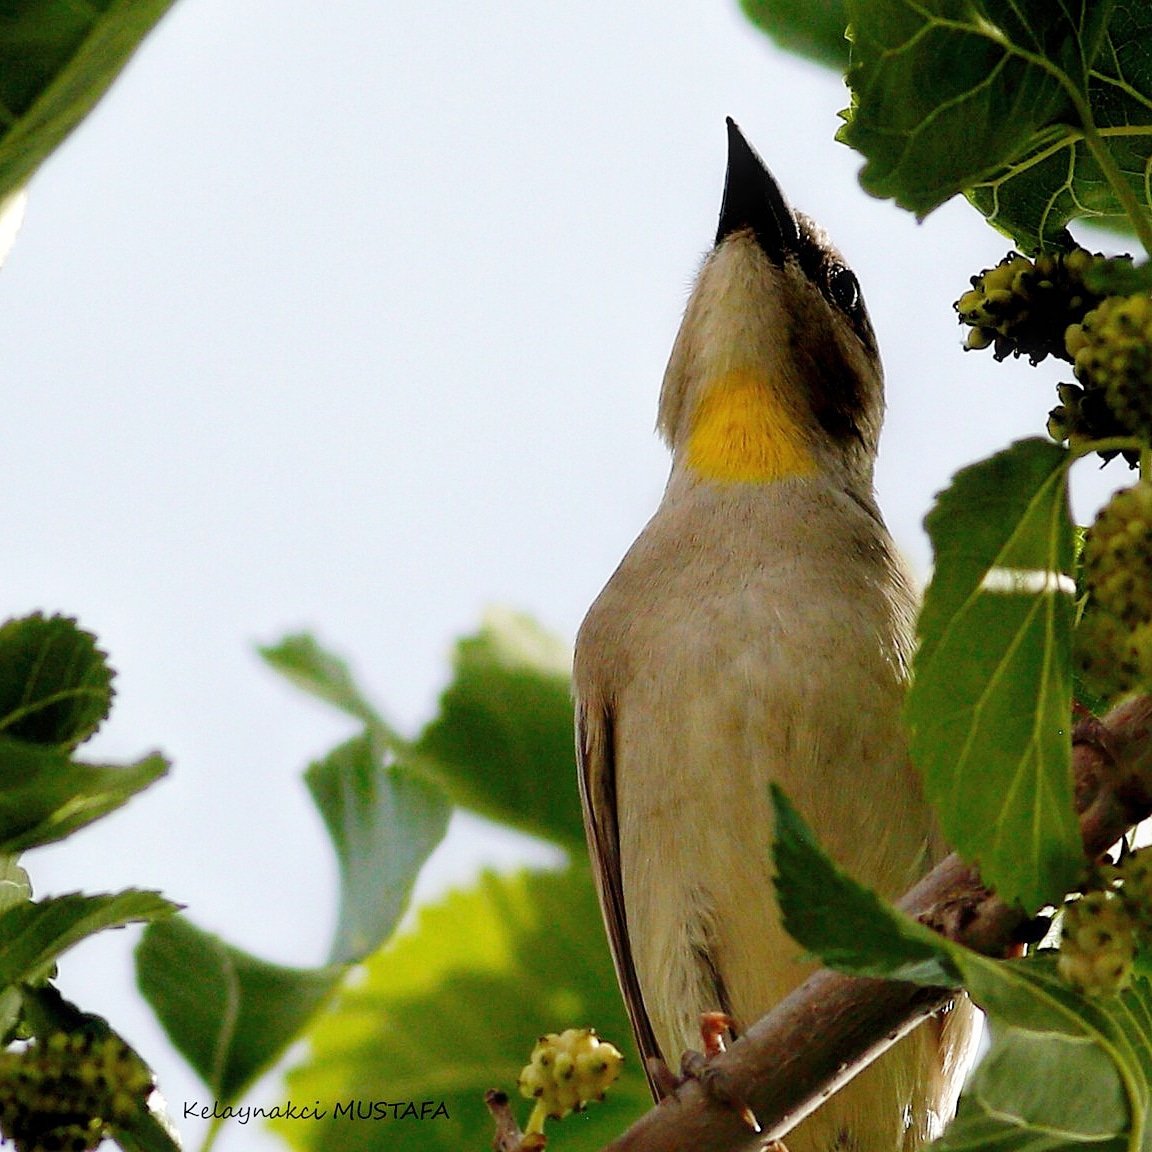 Naturparkcafe nin enson nadirat kuşu oluyor kendisi...😍💙🇹🇷 #sarıboğazlısarçe #yellowthrotedsparrow ..